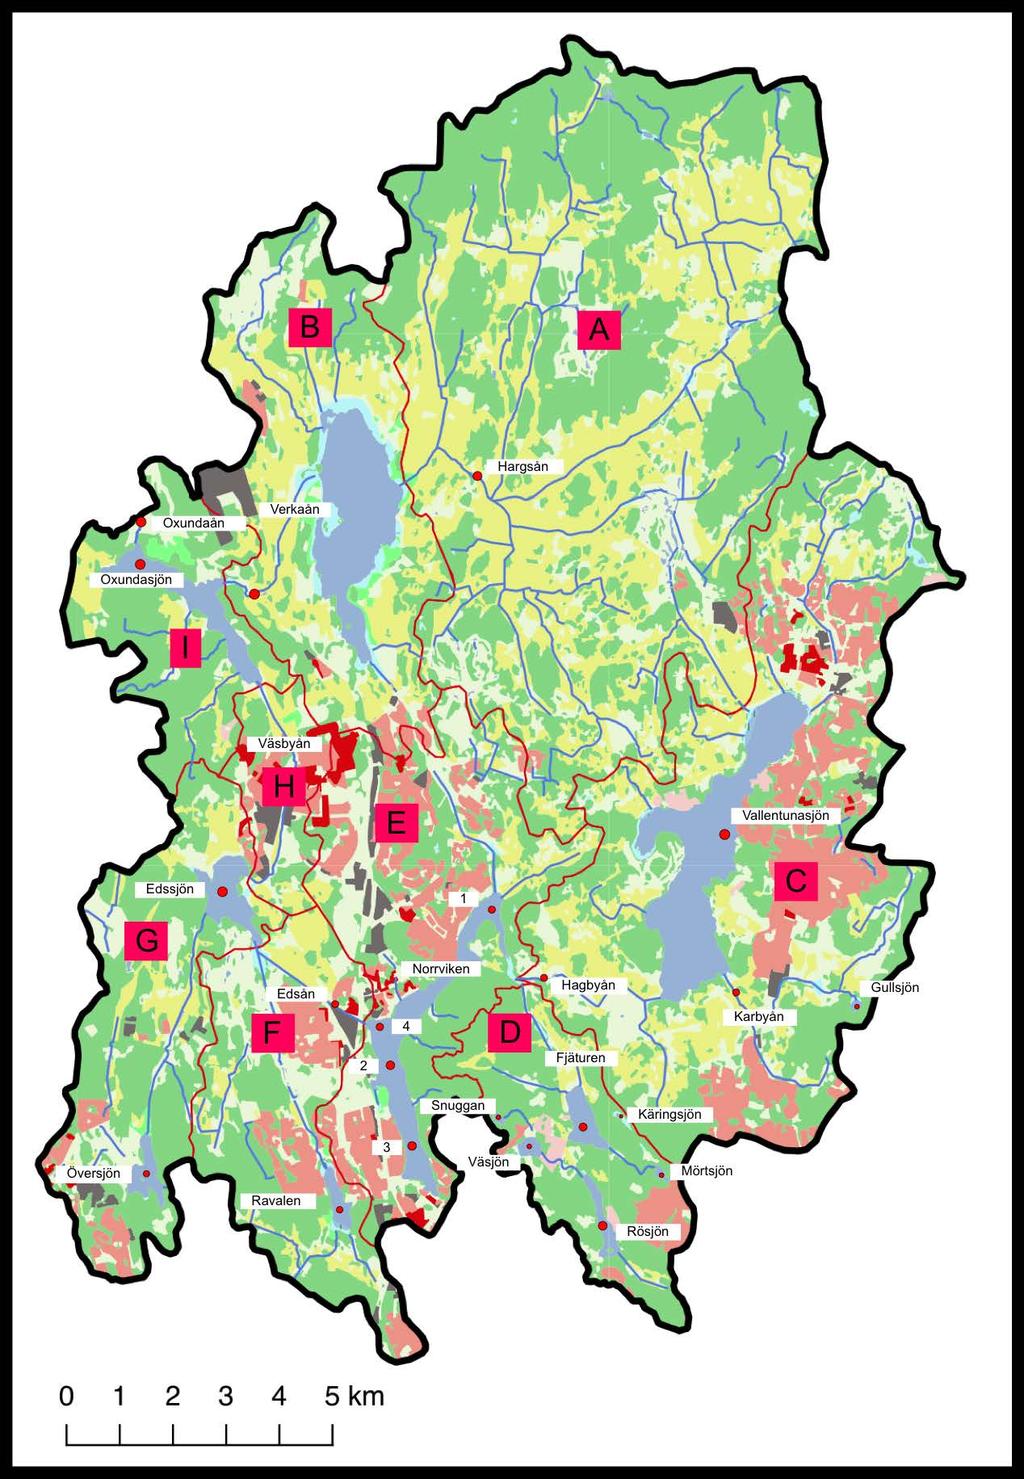 Oxundaåns avrinningsområde med delavrinningsområden Område Area (km²) A. Hargsån 87,1 B. Fysingen-Verkaån 29,5 C.